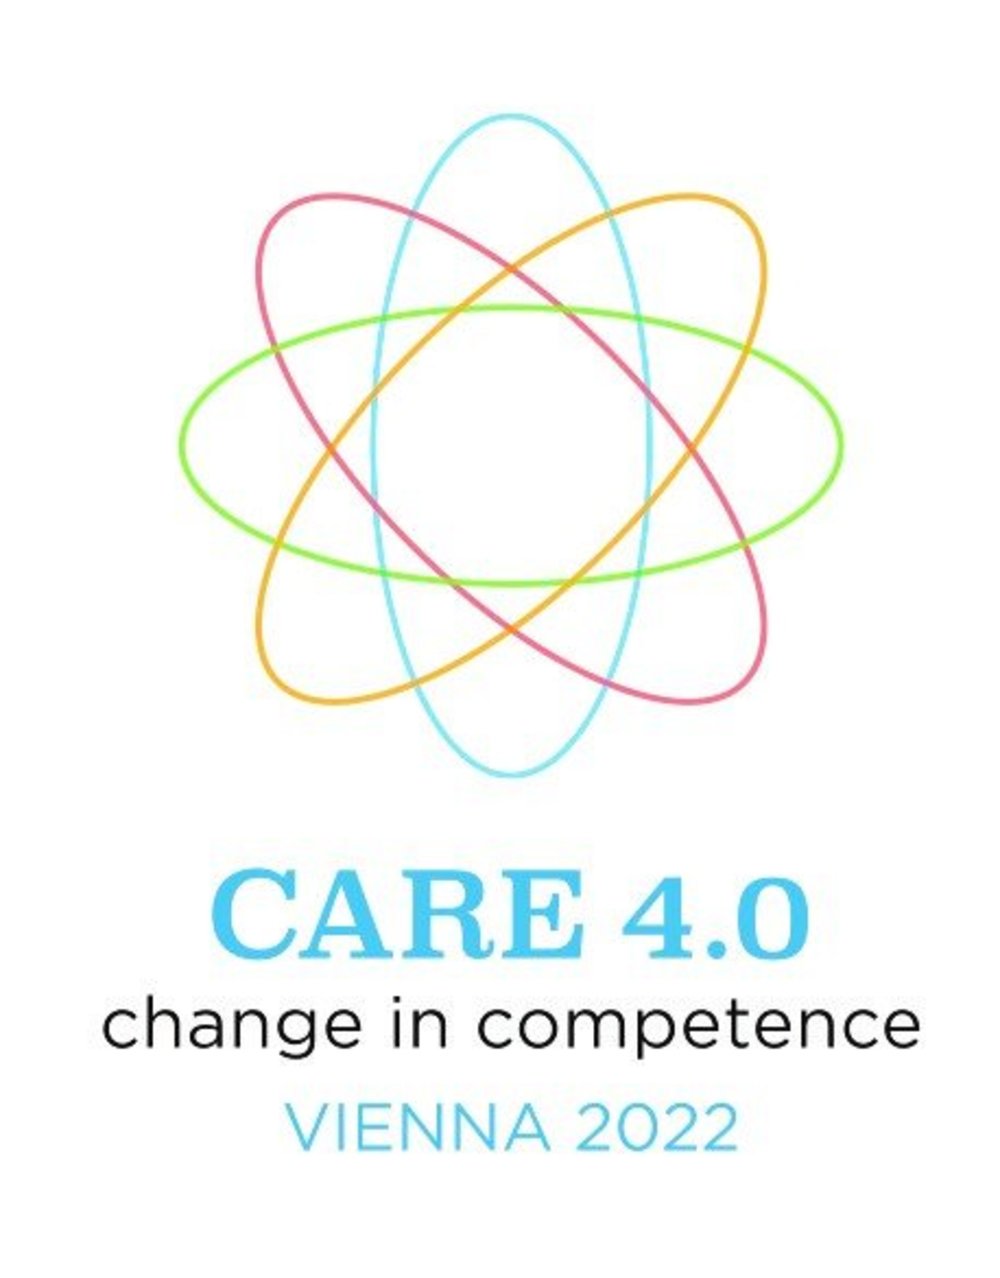 Der Internationale Leadership Kongress von 28.-30.09.2022 trägt den Titel "Care 4.0 - Change in competence";